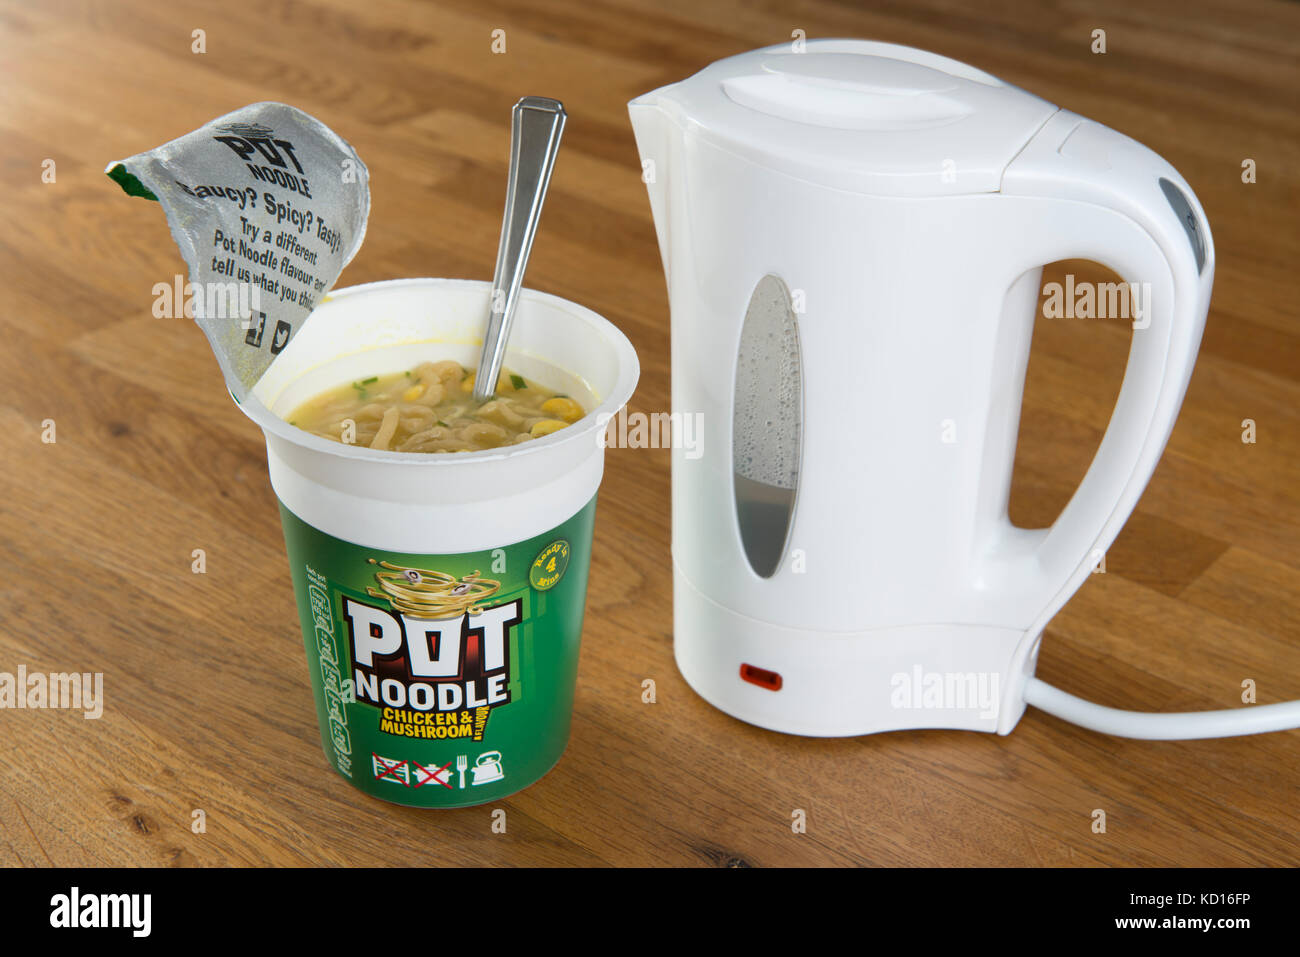 Un pot d'Unilever (poulet et nouilles saveur de champignon) en train d'être préparées à l'aide de l'eau bouillante d'une bouilloire (usage éditorial uniquement). Banque D'Images